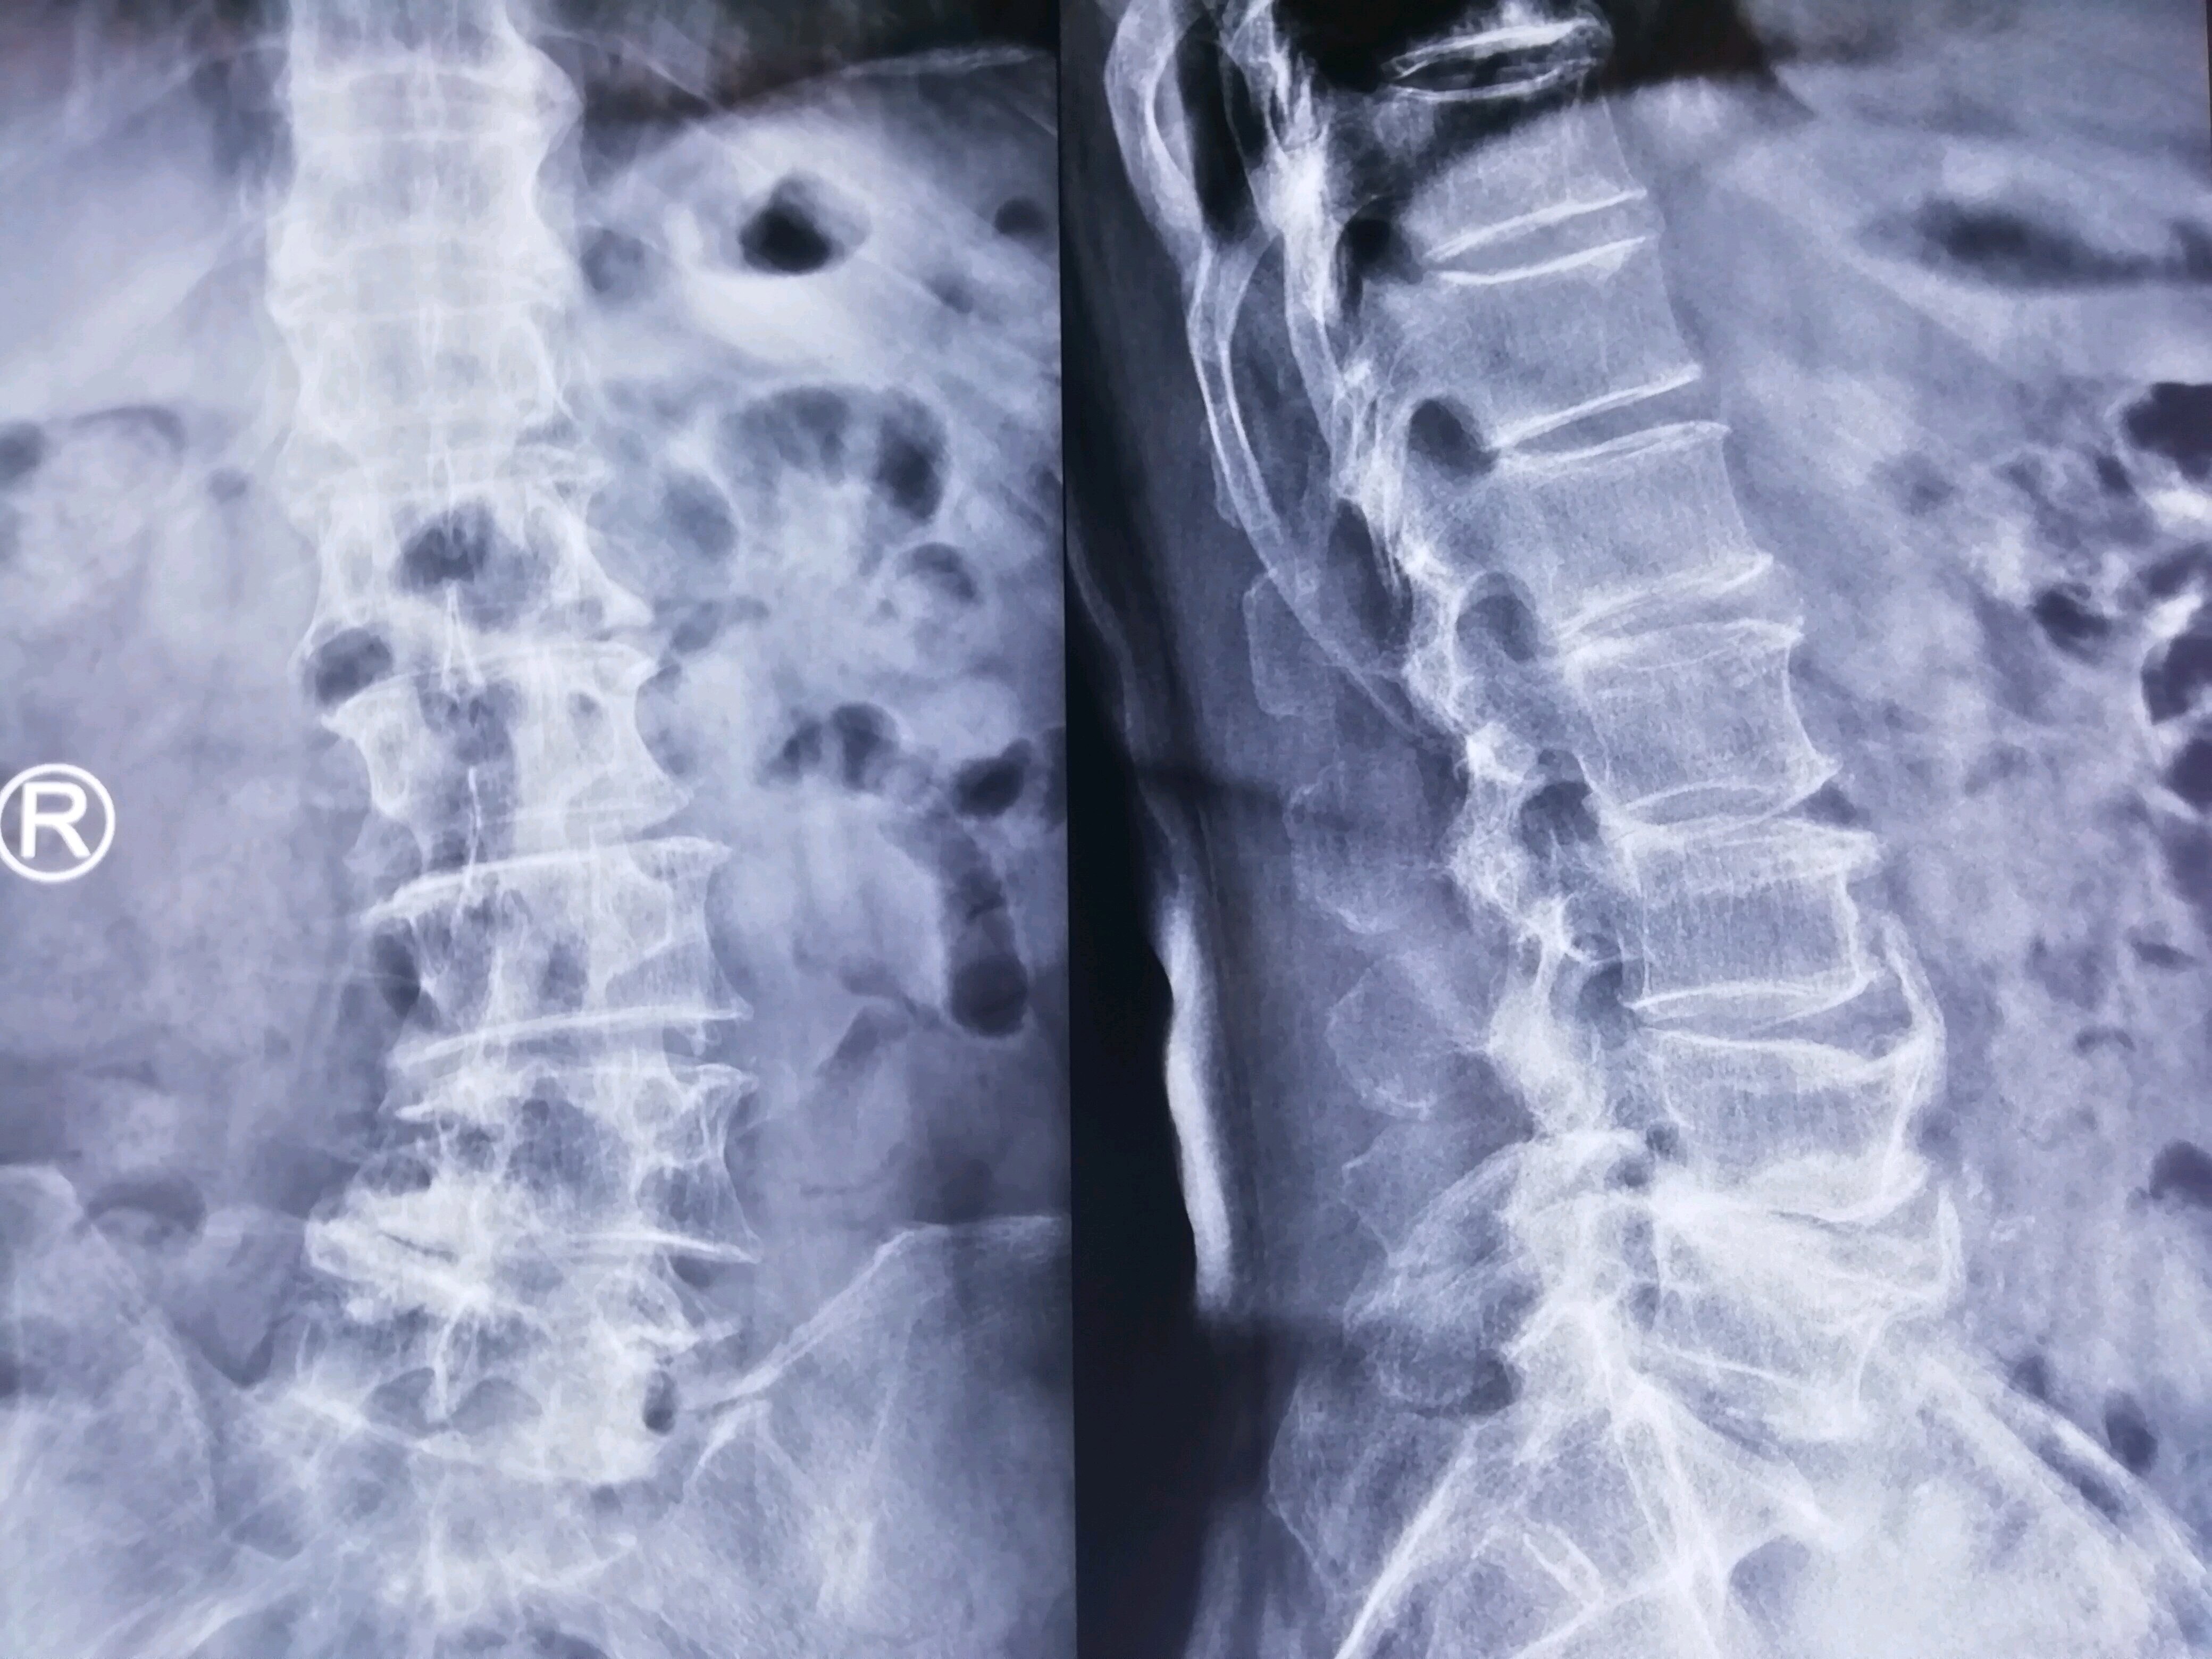 midlf手术治疗腰椎管狭窄症伴有腰椎退变性侧弯畸形